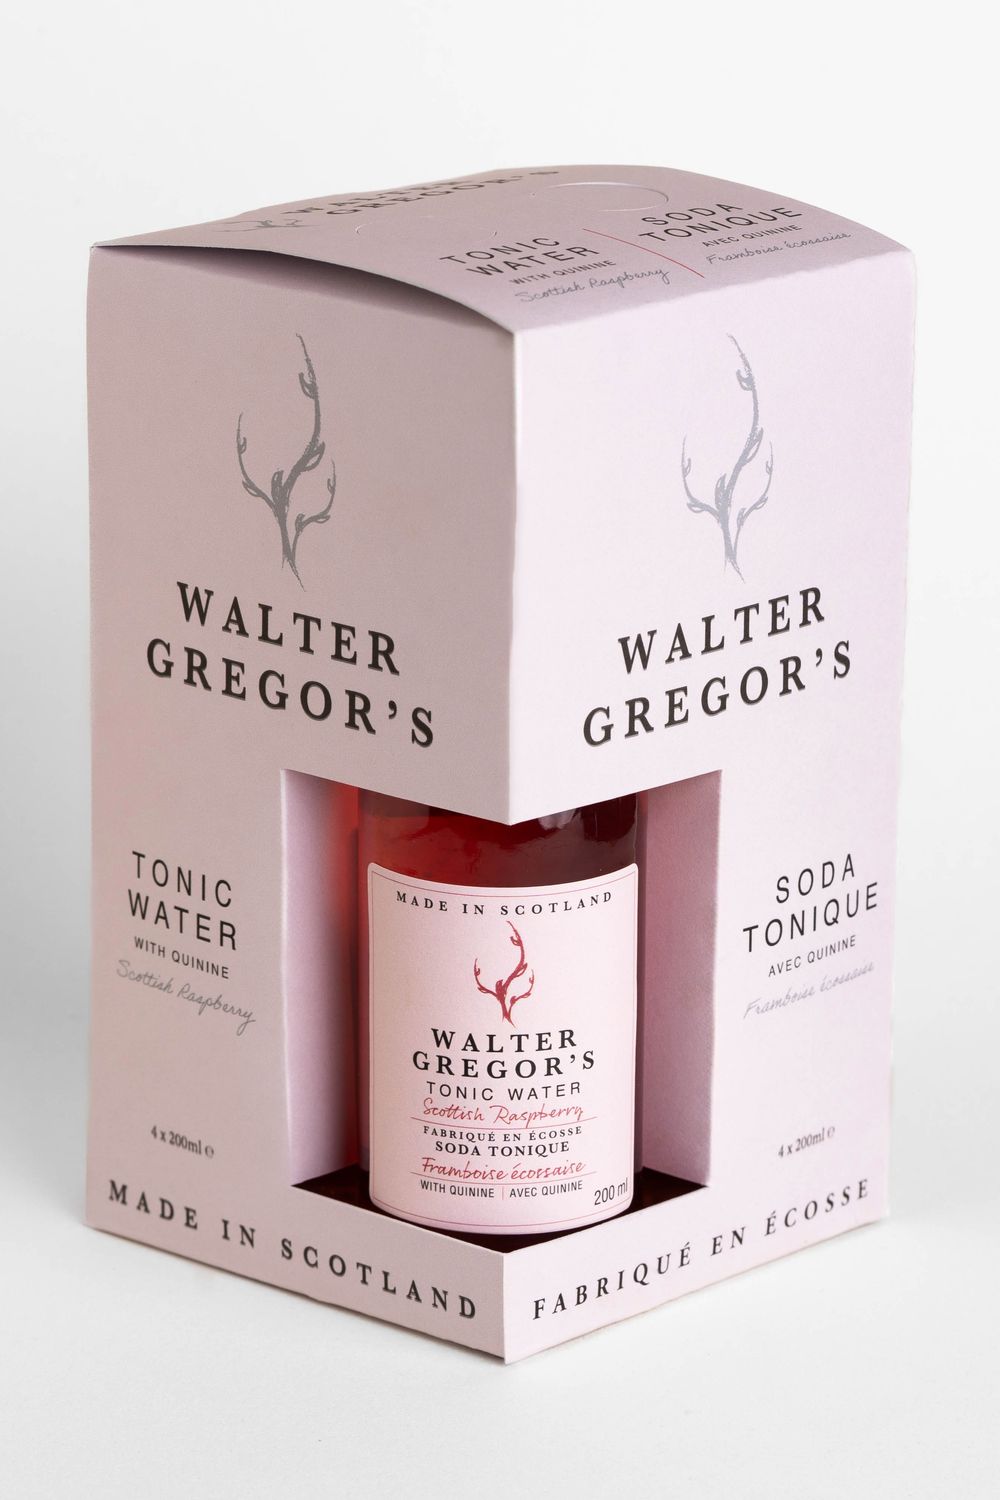 Scottish Raspberry Tonic Water 4-pack